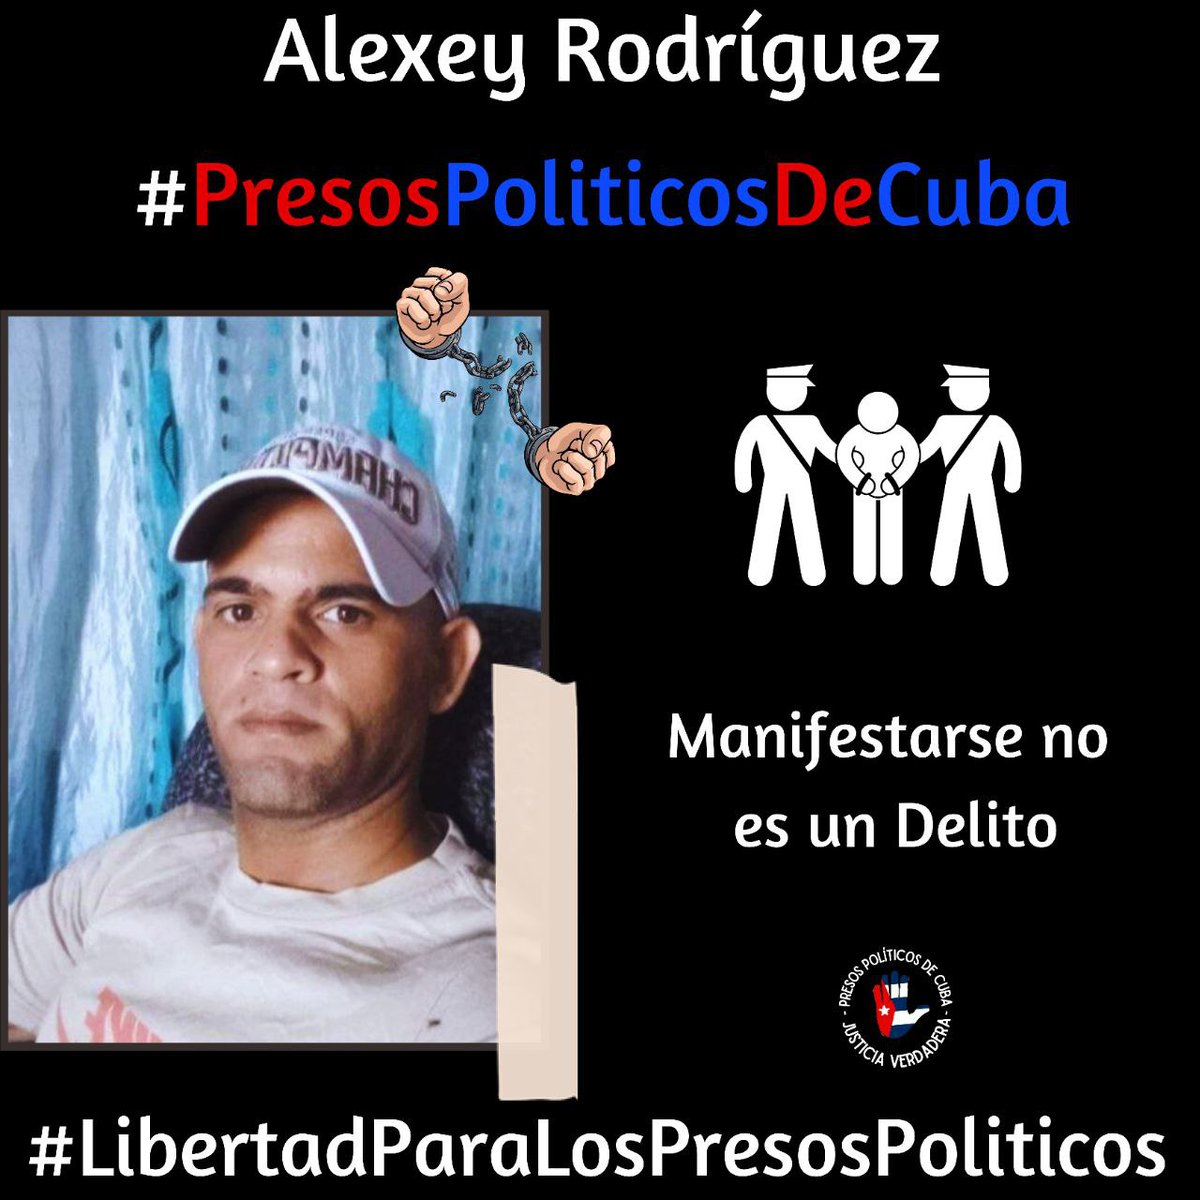 #Twittazo Libertad para Alexey Rodríguez. 
.
“Sin aire, la tierra muere. Sin libertad, como sin aire propio y esencial, nada vive.” -José Martí-
.

.
.
#HastaQueSeanLibres 
#PresosPoliticosDeCuba
#LibertadYJusticiaParaCuba